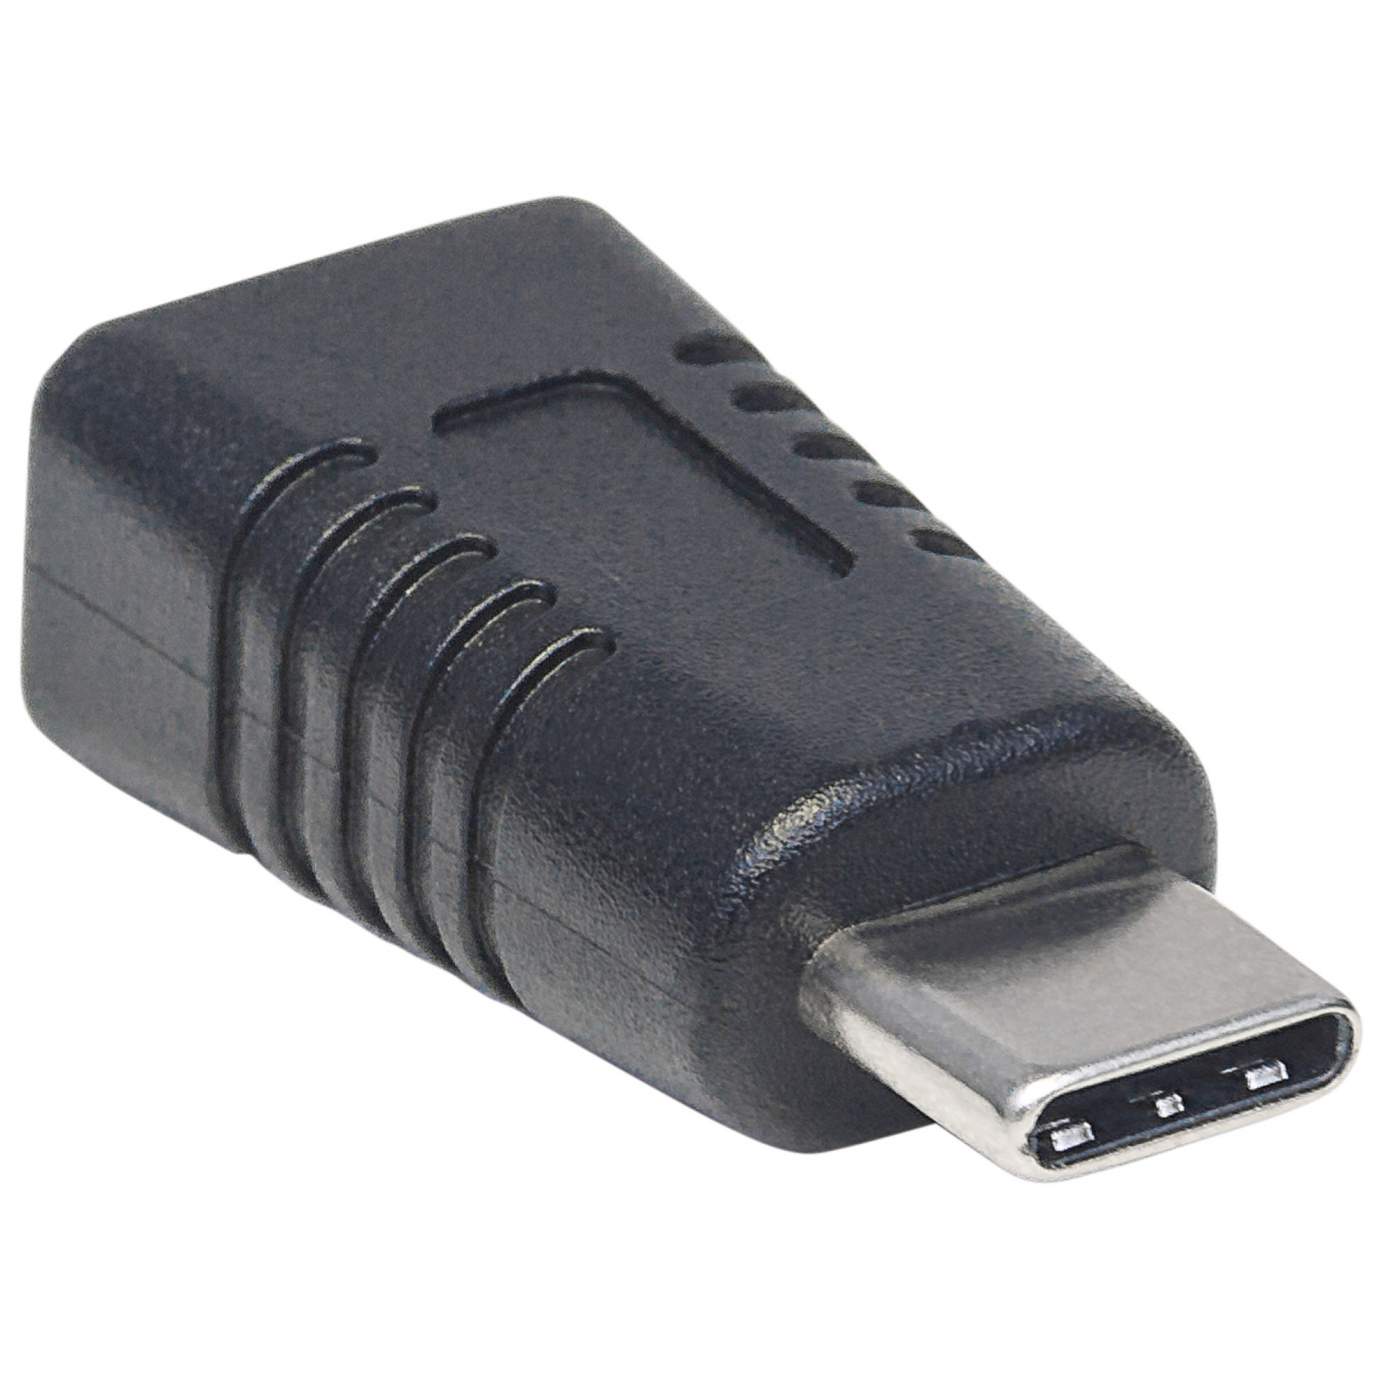 Mini USB to USB-C Adapter